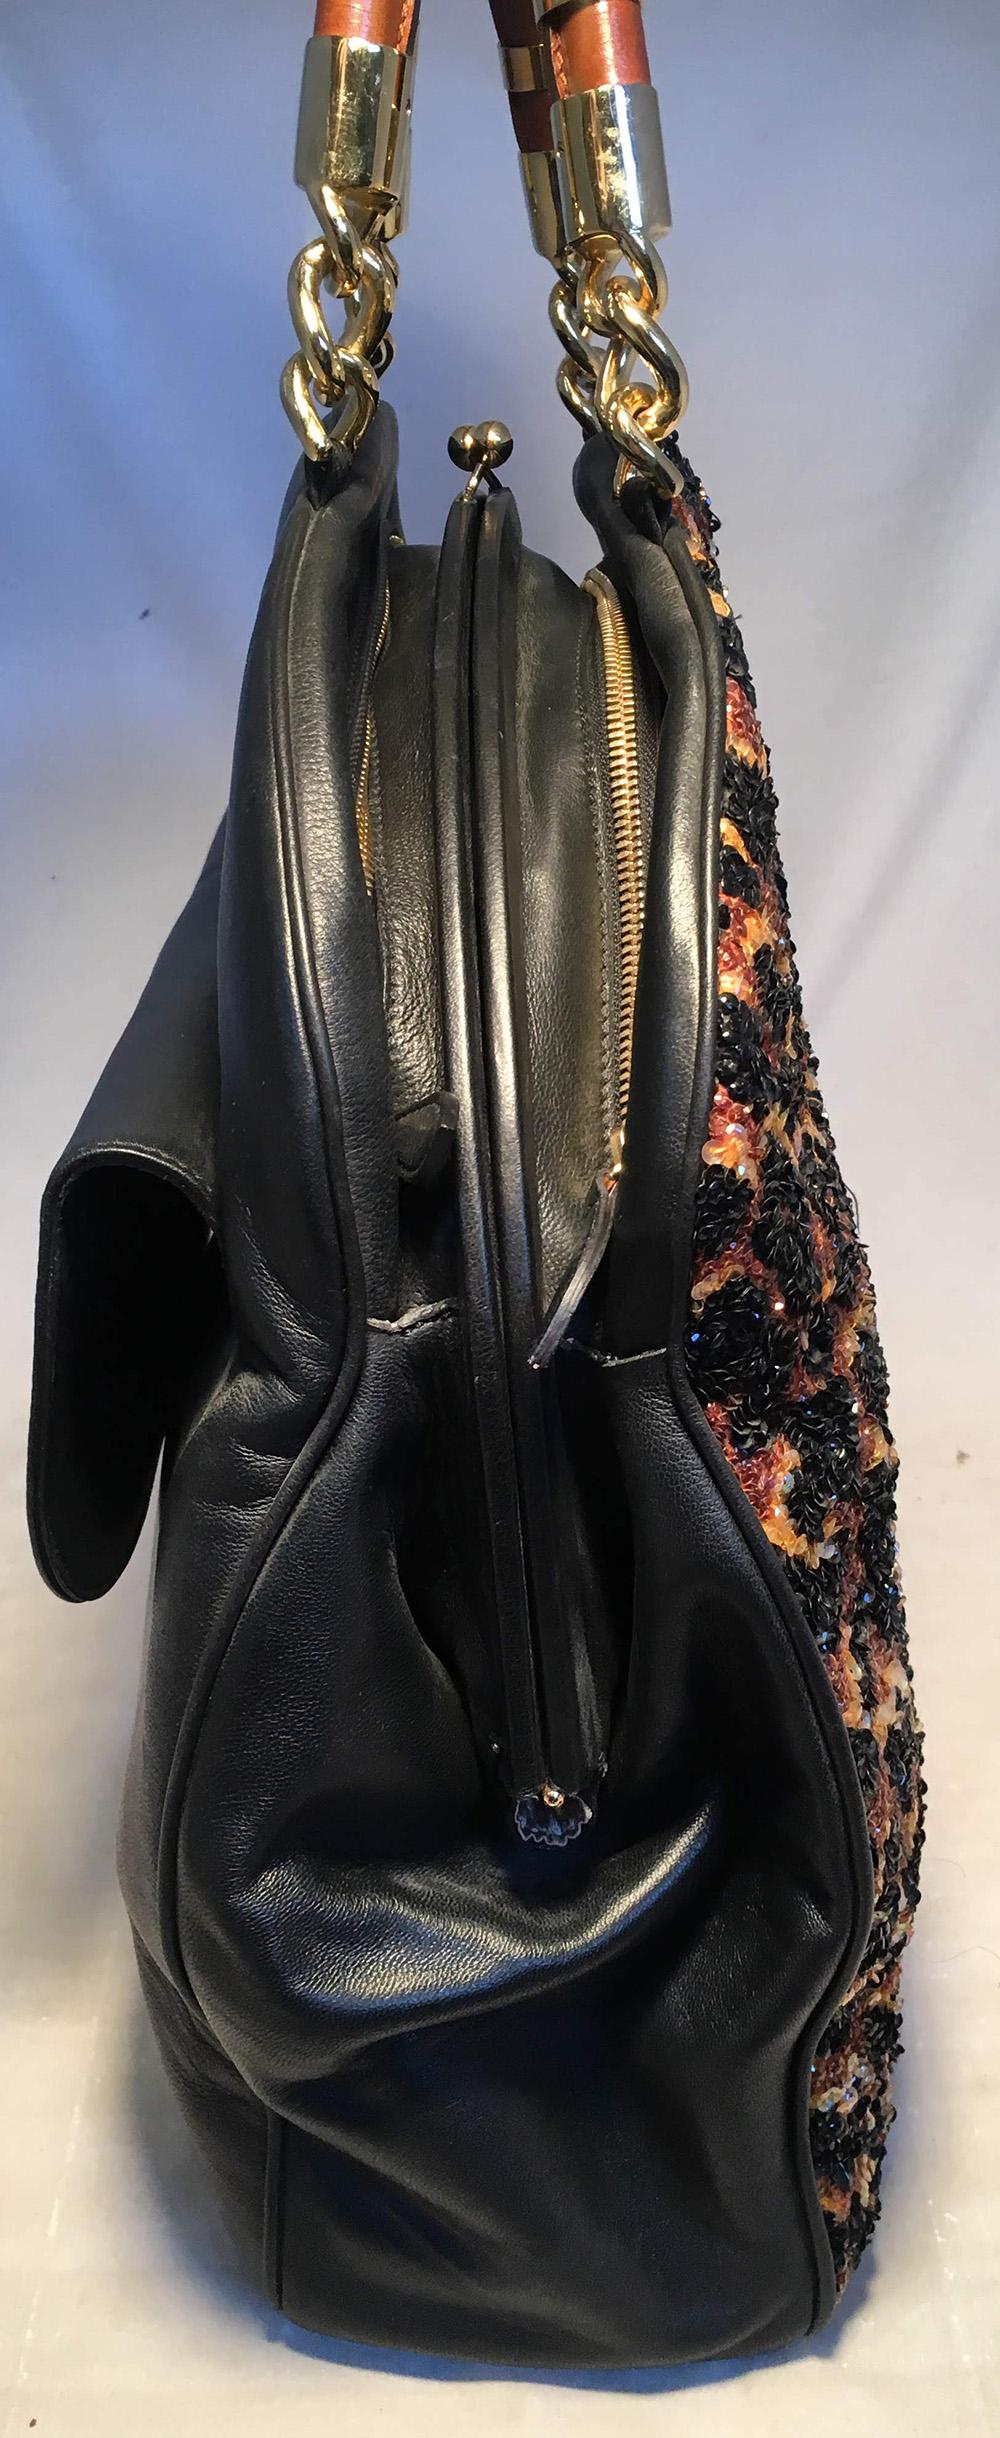 OOAK Abigail Made in Italy Contessa Leopard Beaded Gown Top Handle Leder Tote. Einzigartige handgefertigte Tasche mit Tragegriff, die aus einem perlenbesetzten Kleid einer italienischen Contessa hergestellt wurde. Perlenbesetztes Leopardenmuster mit